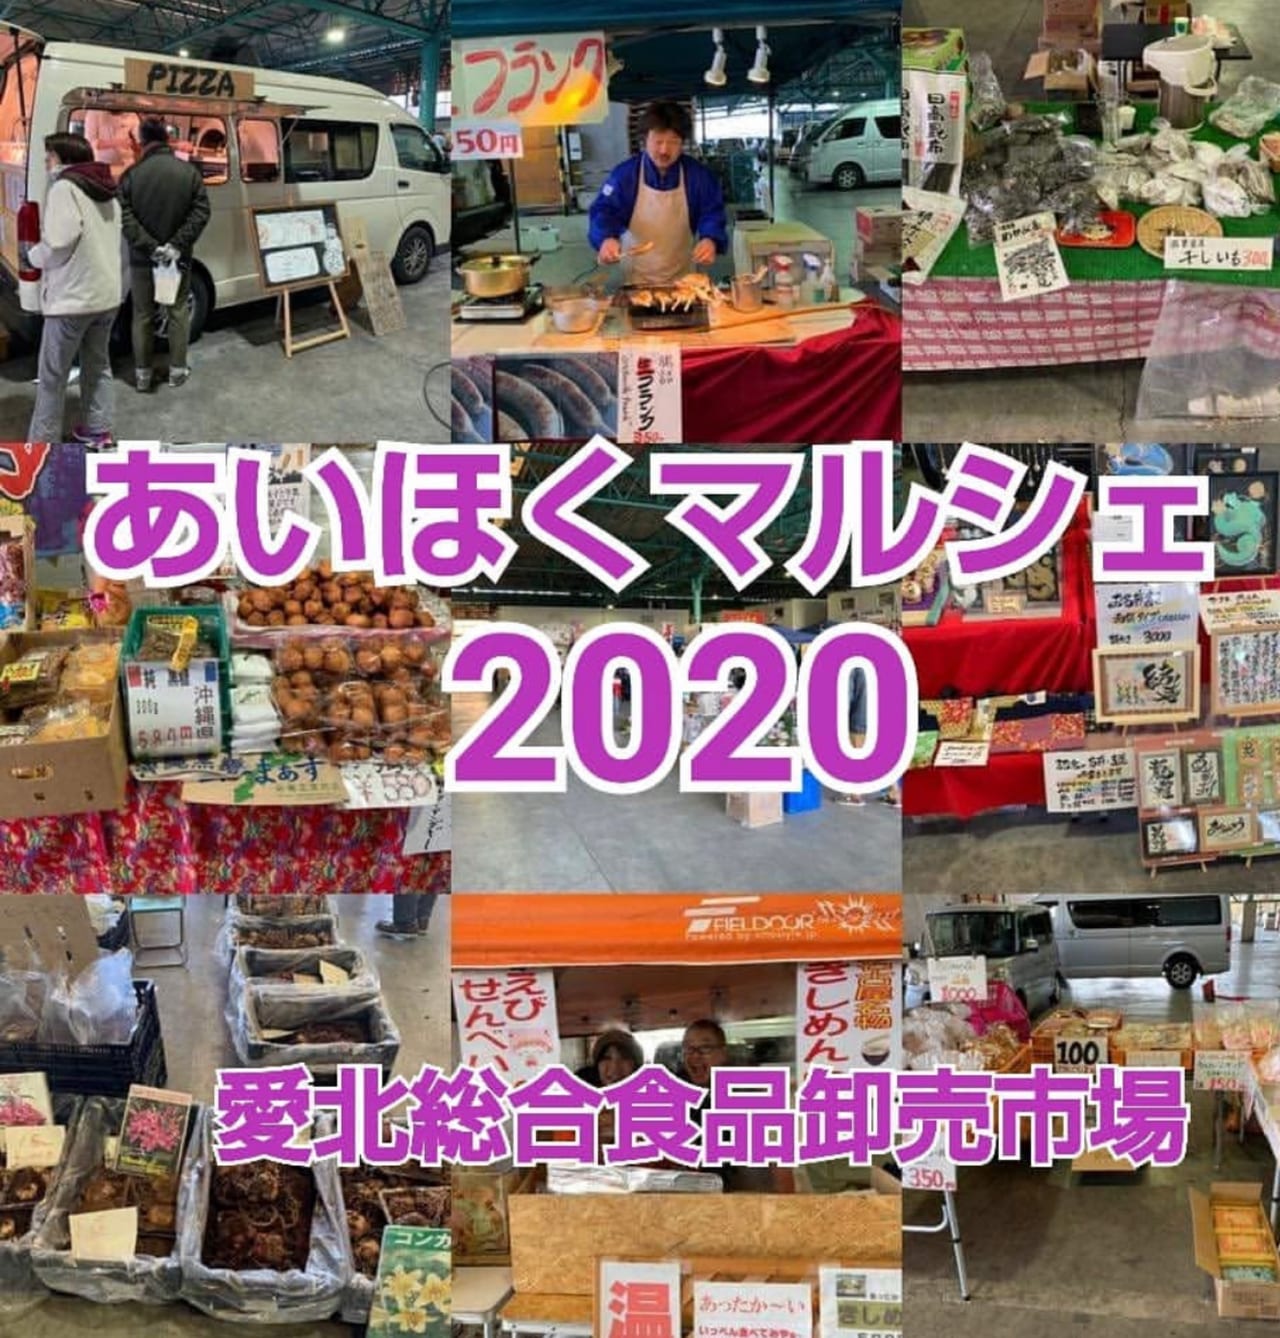 愛北総合食品卸売市場で開催される『あいほくマルシェ』